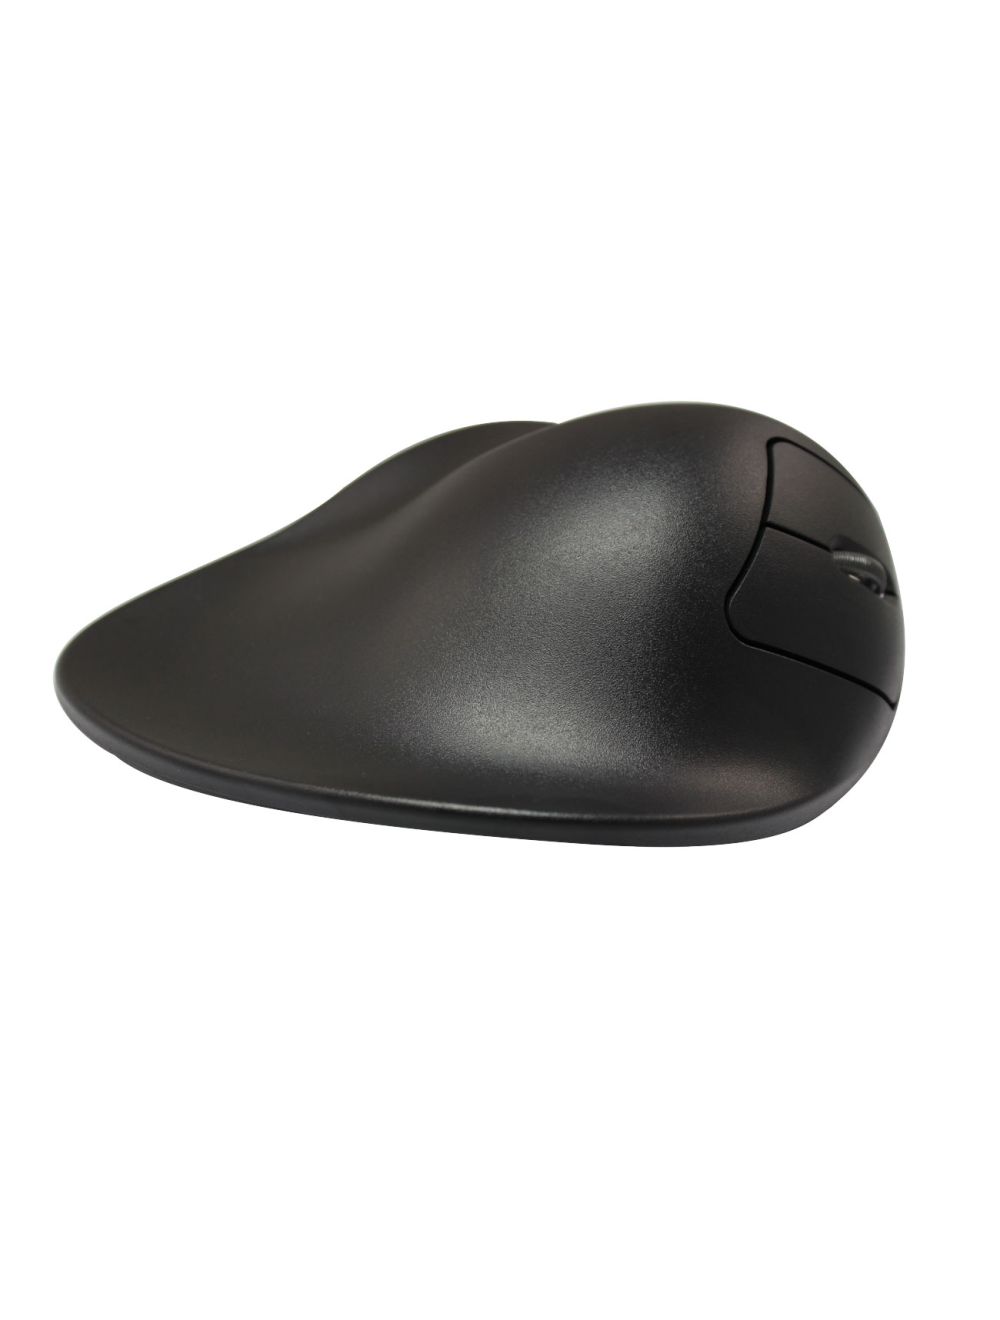 Ergonomic Mouse - Hippus HandShoeMouse Wireless